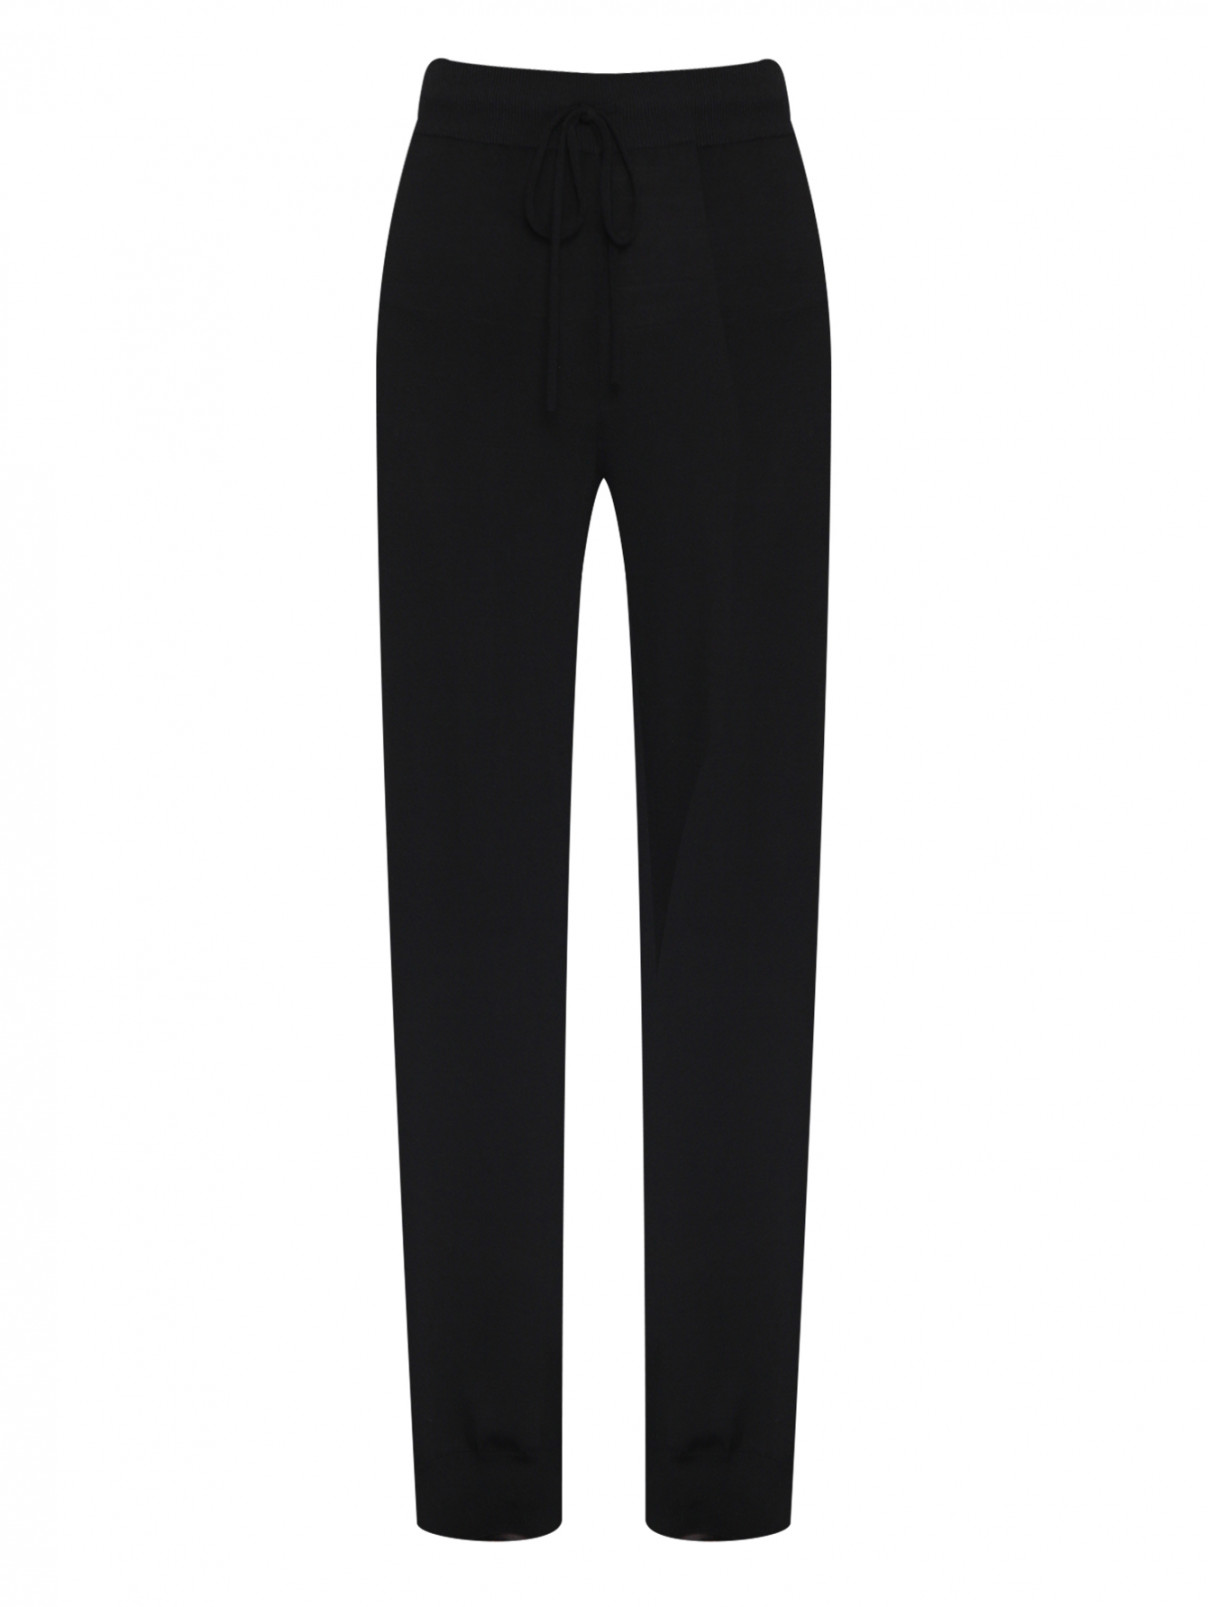 Трикотажные брюки на резинке Ermanno Scervino  –  Общий вид  – Цвет:  Черный